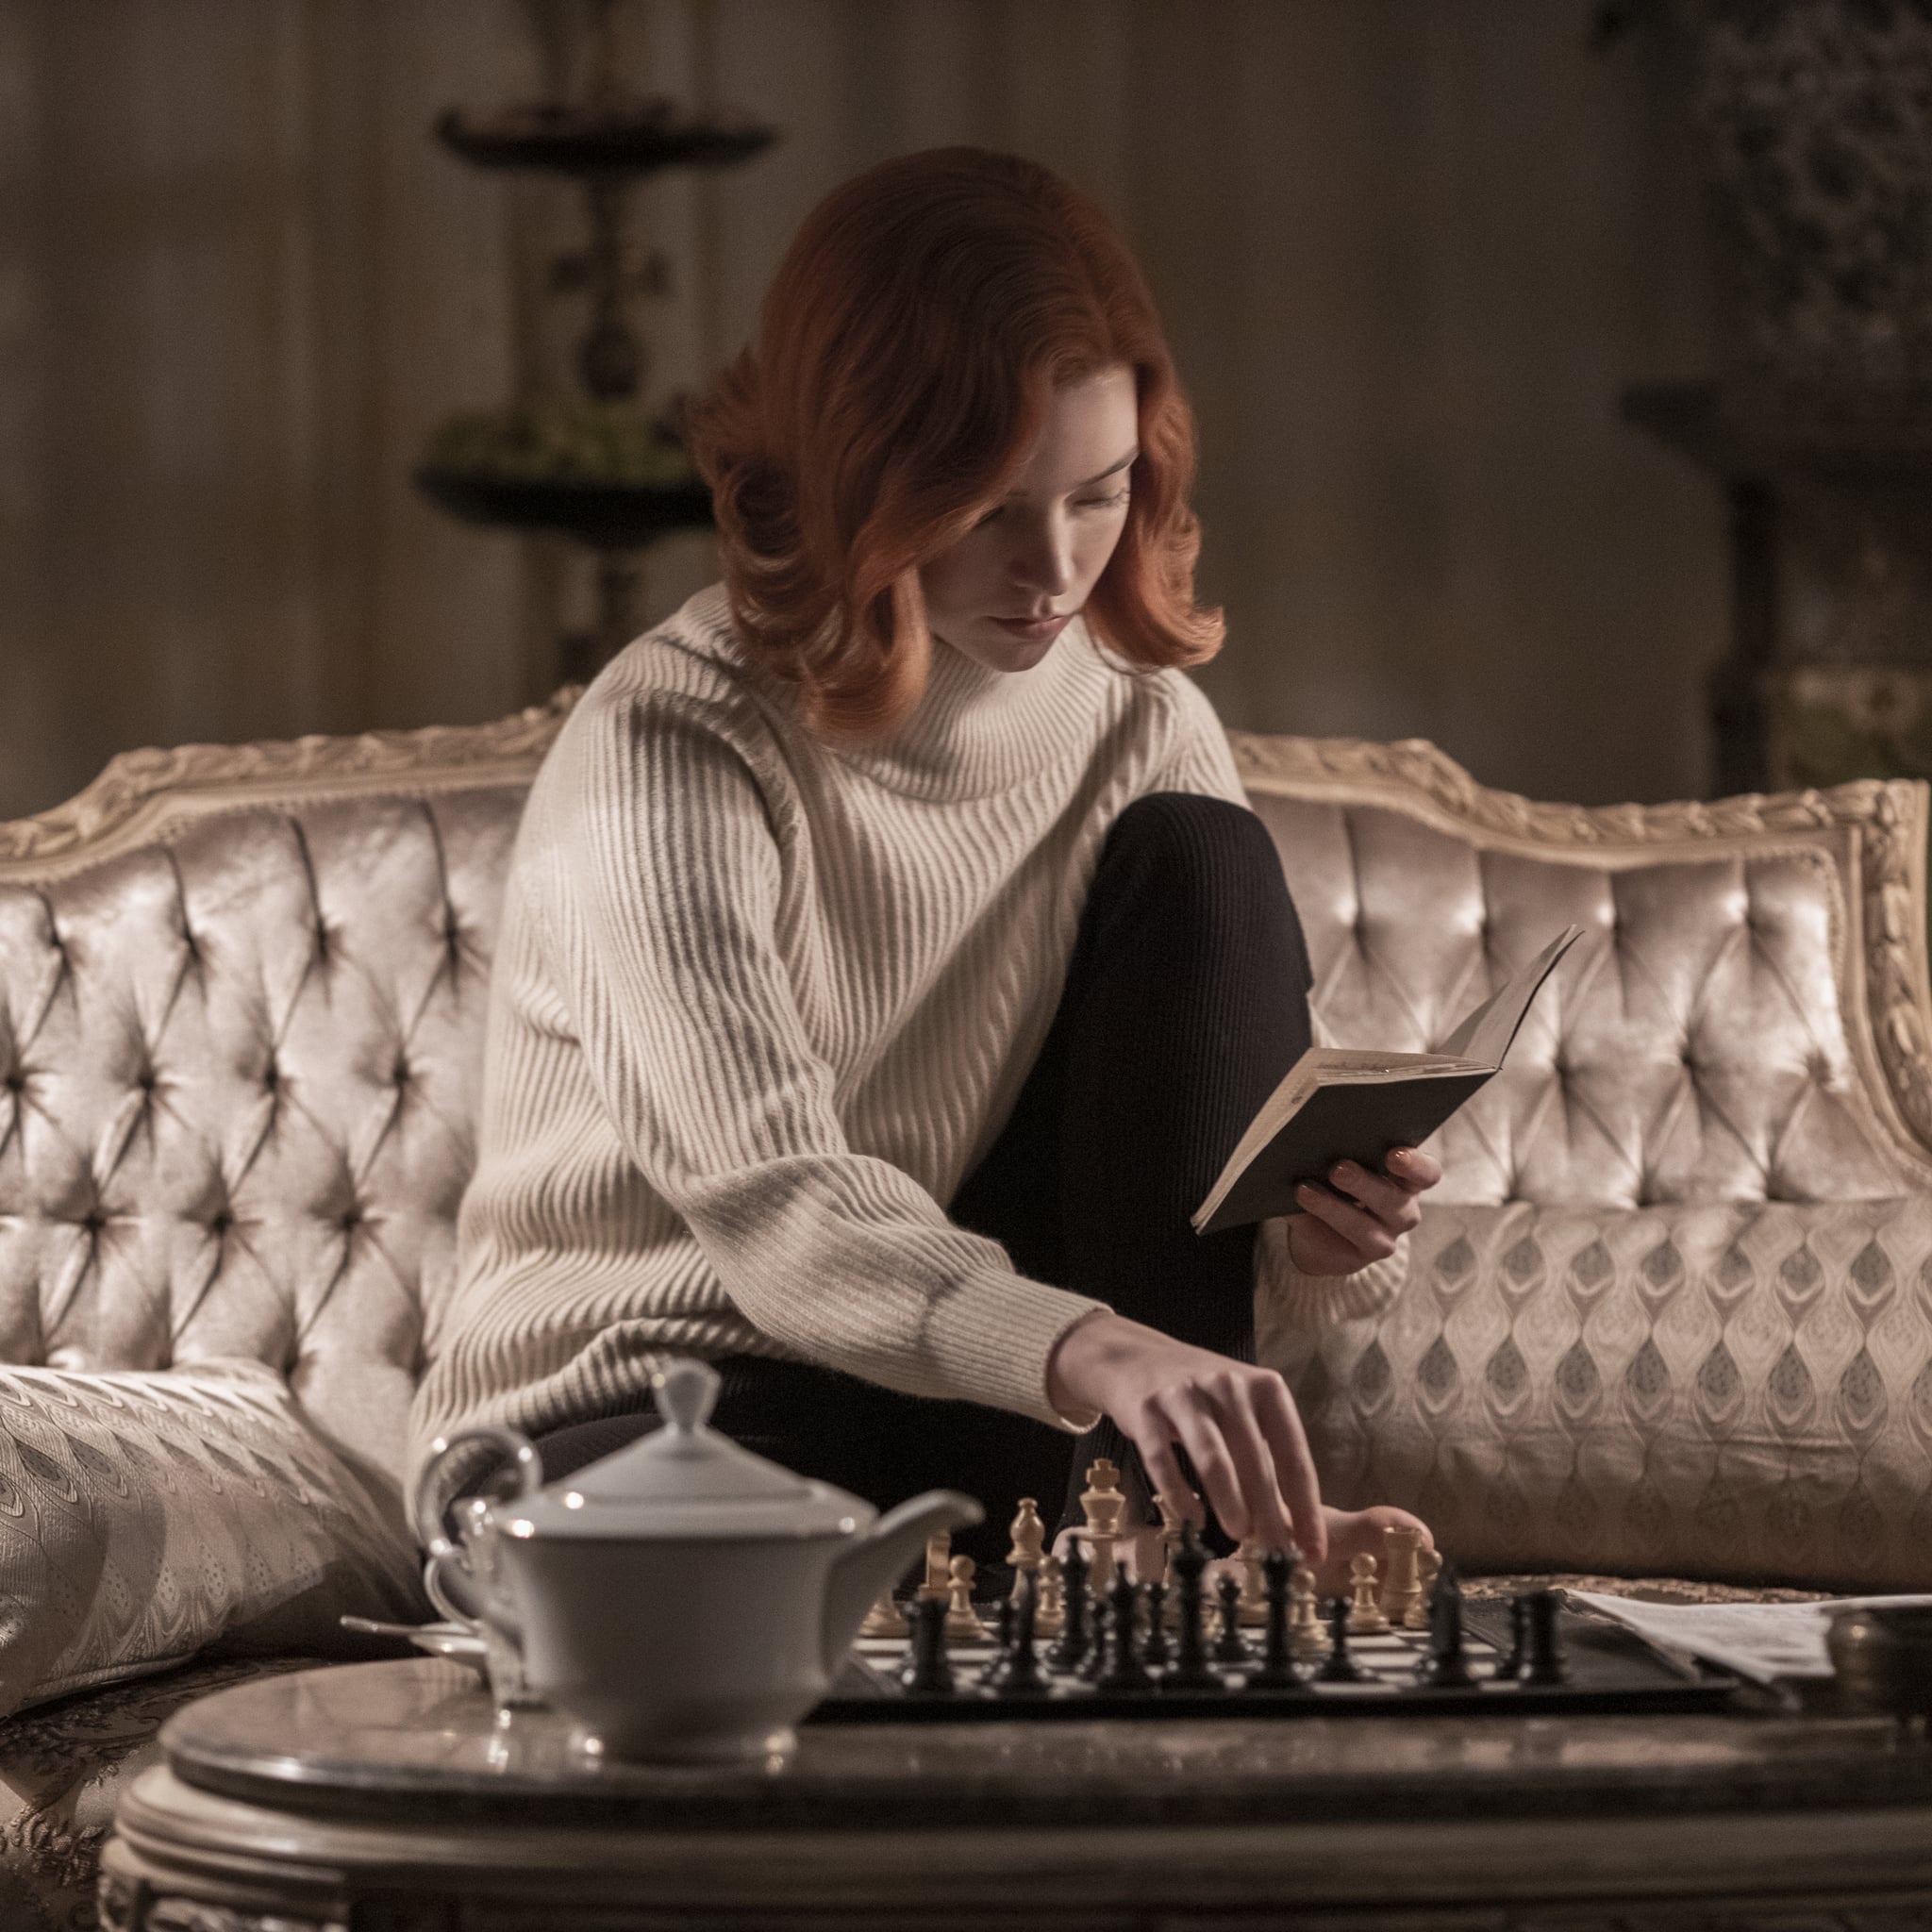 The Queen's Gambit: Beth's Style Is Based on Audrey Hepburn